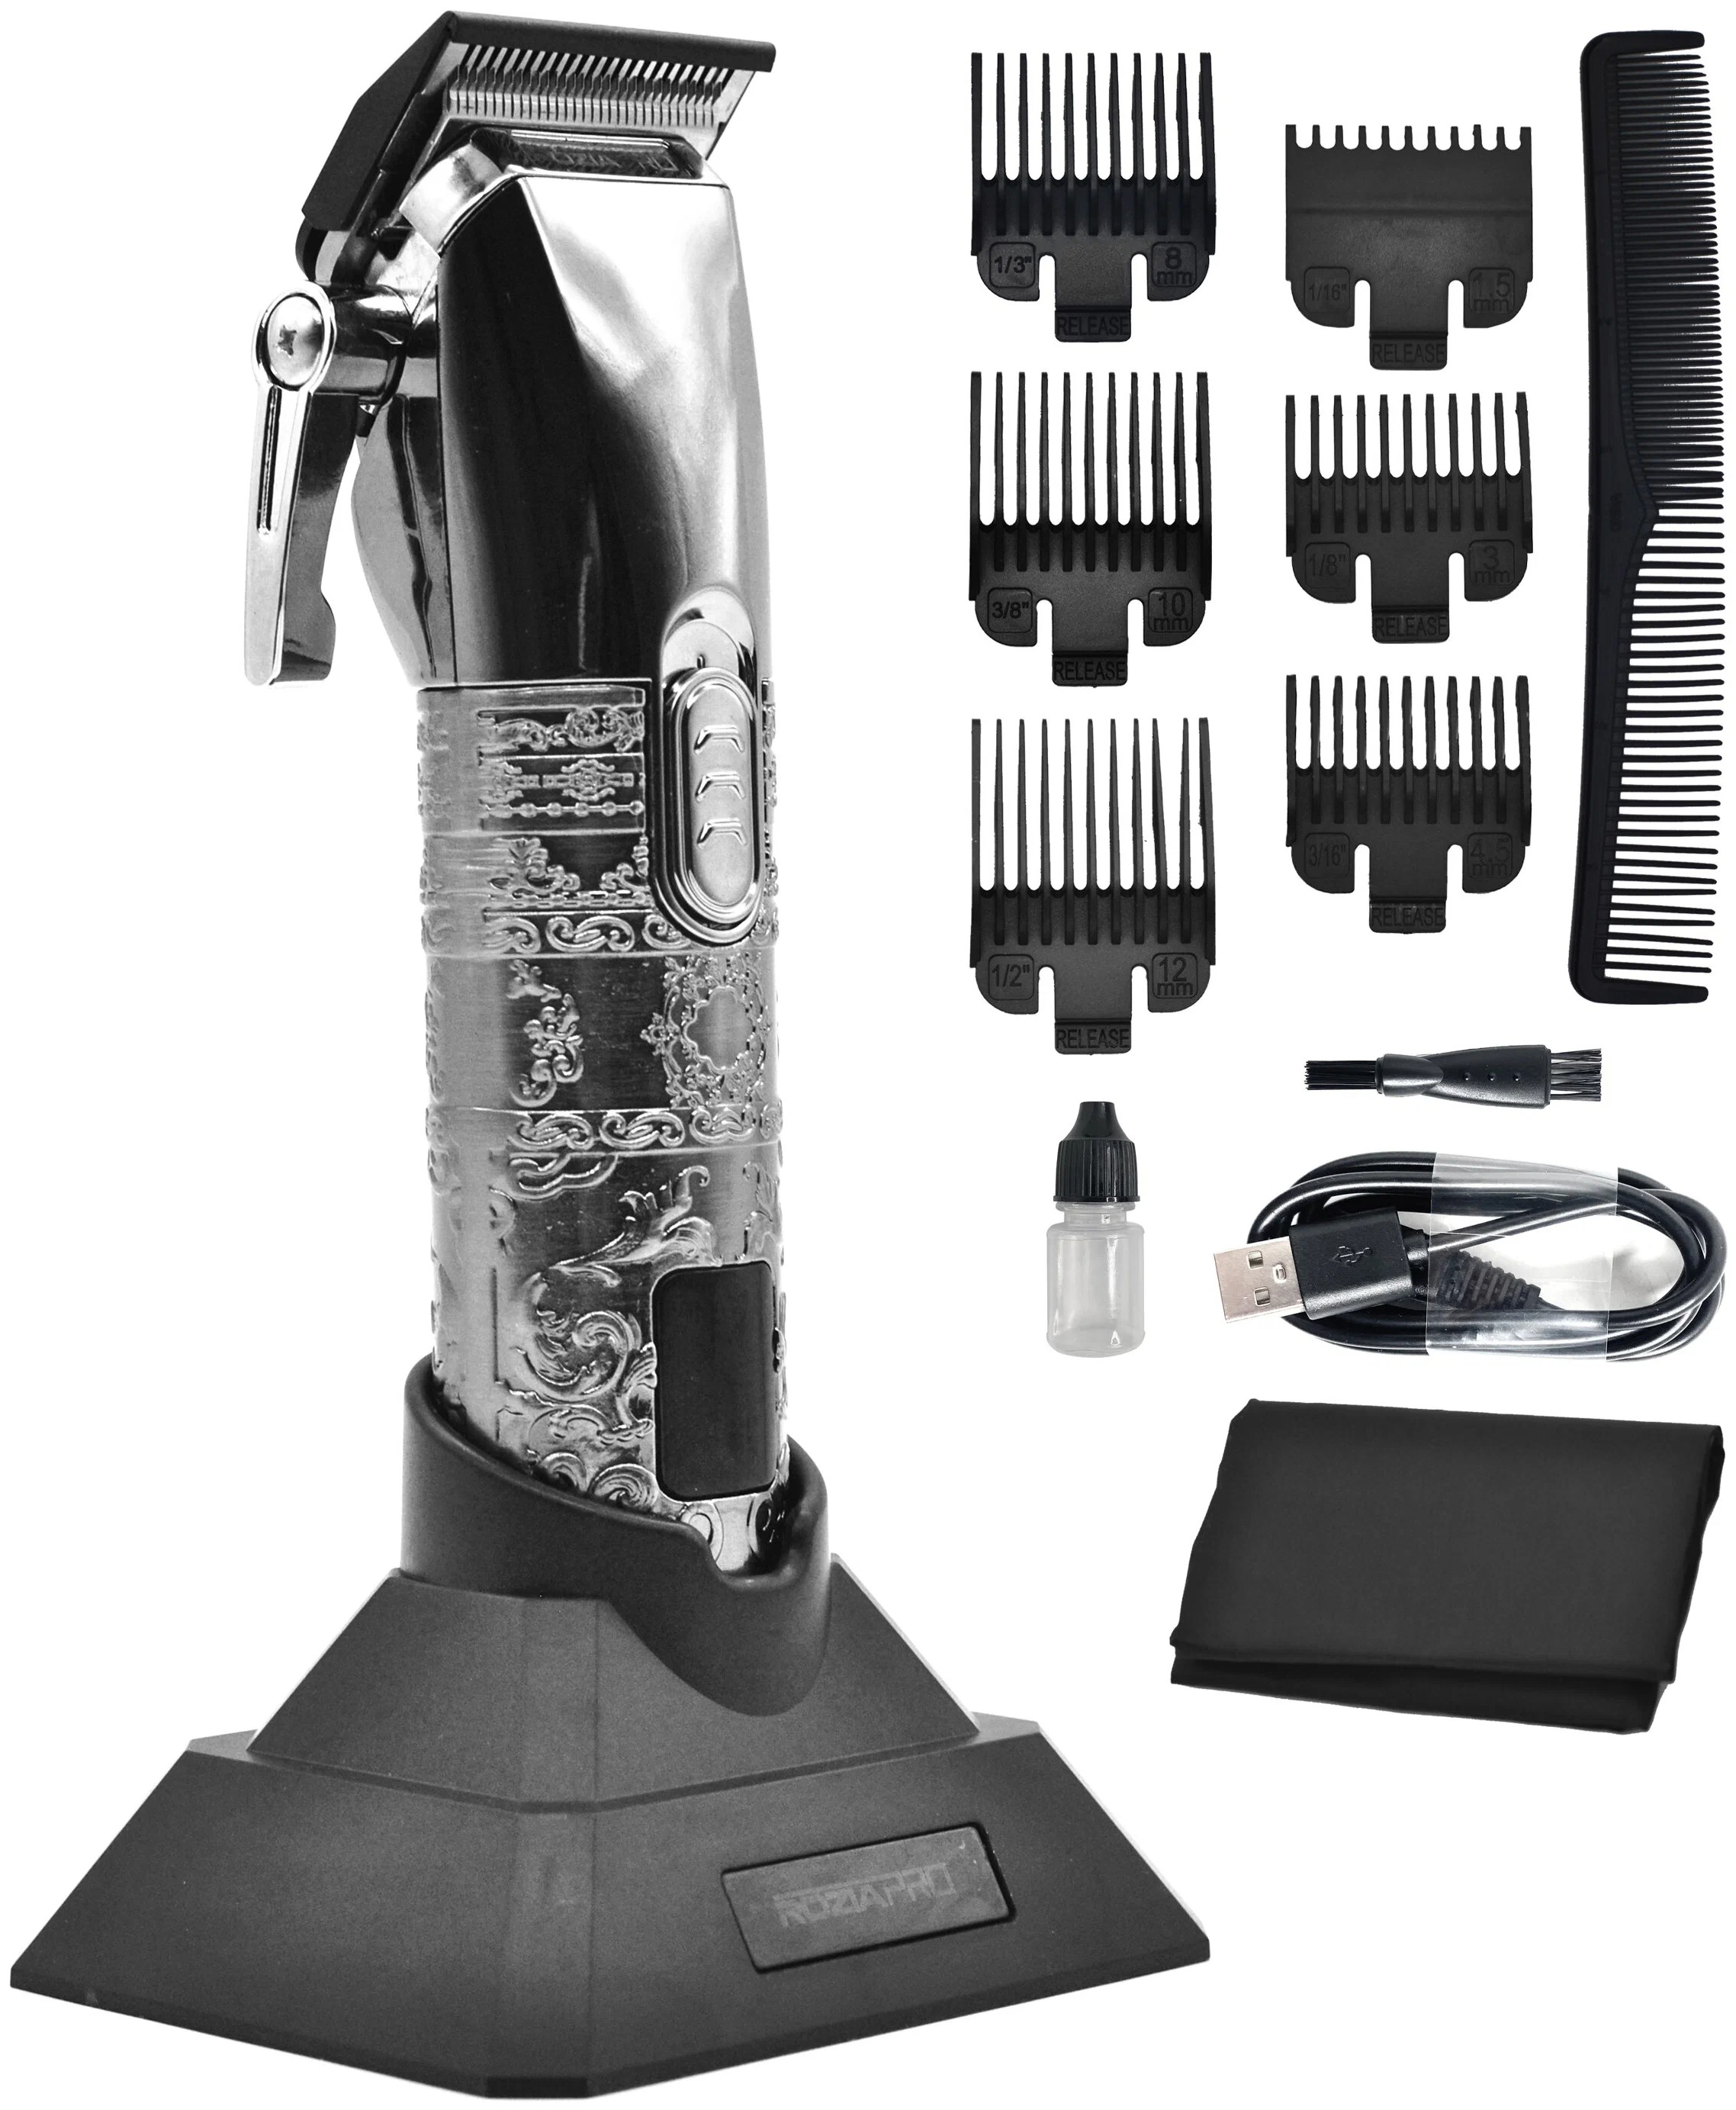 Машинка для стрижки волос Rozia Pro rz2022 серебристый машинка для стрижки волос starwind sbc1711 серебристый